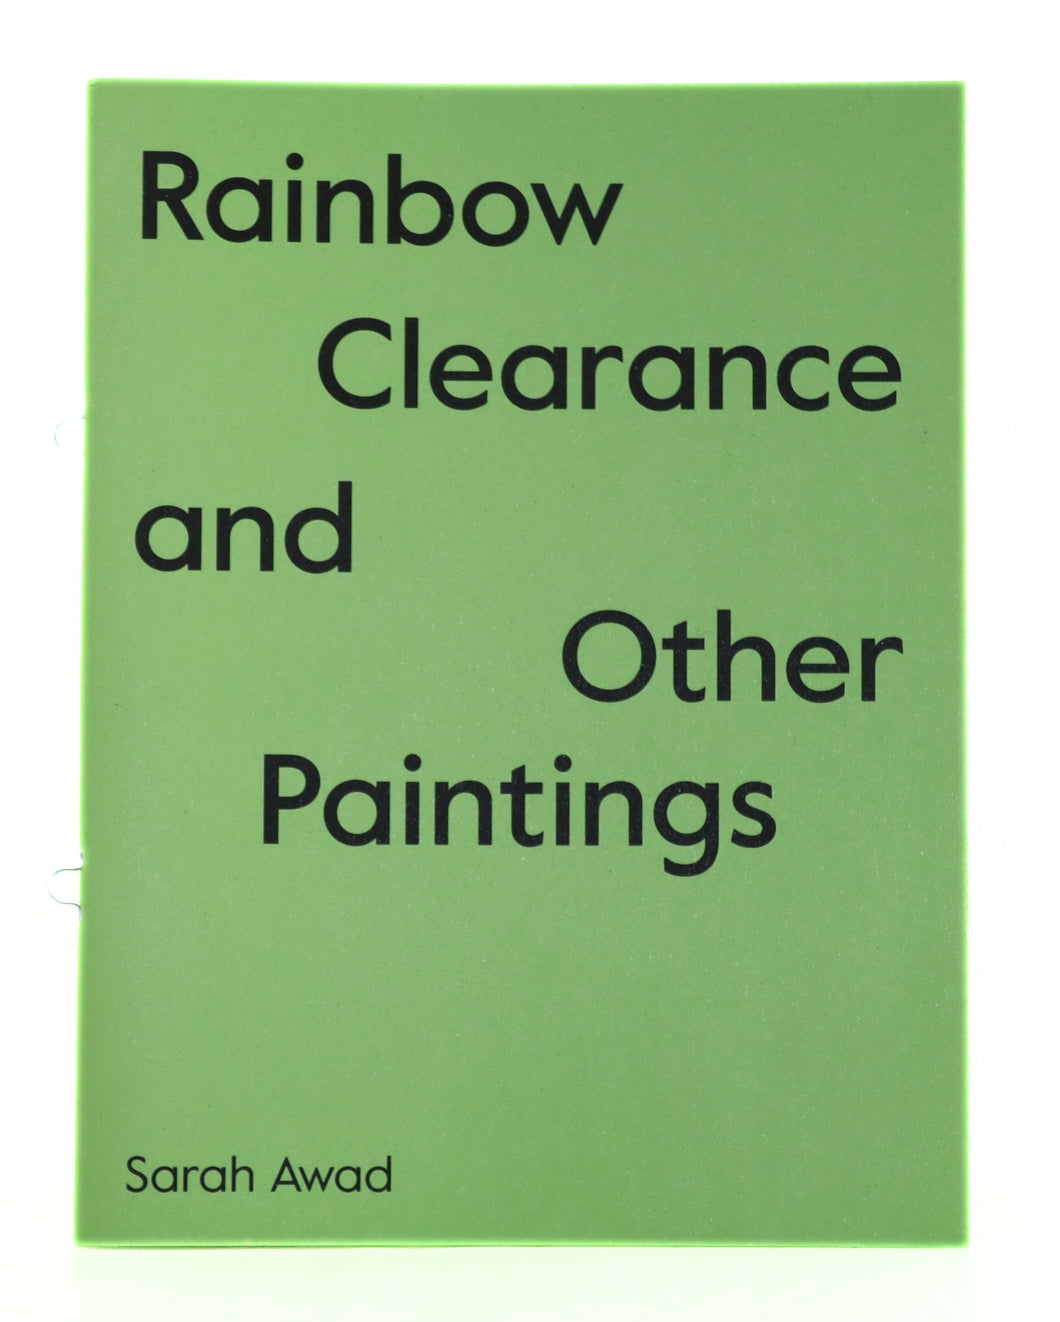 Sarah Awad, Rainbow Clearance